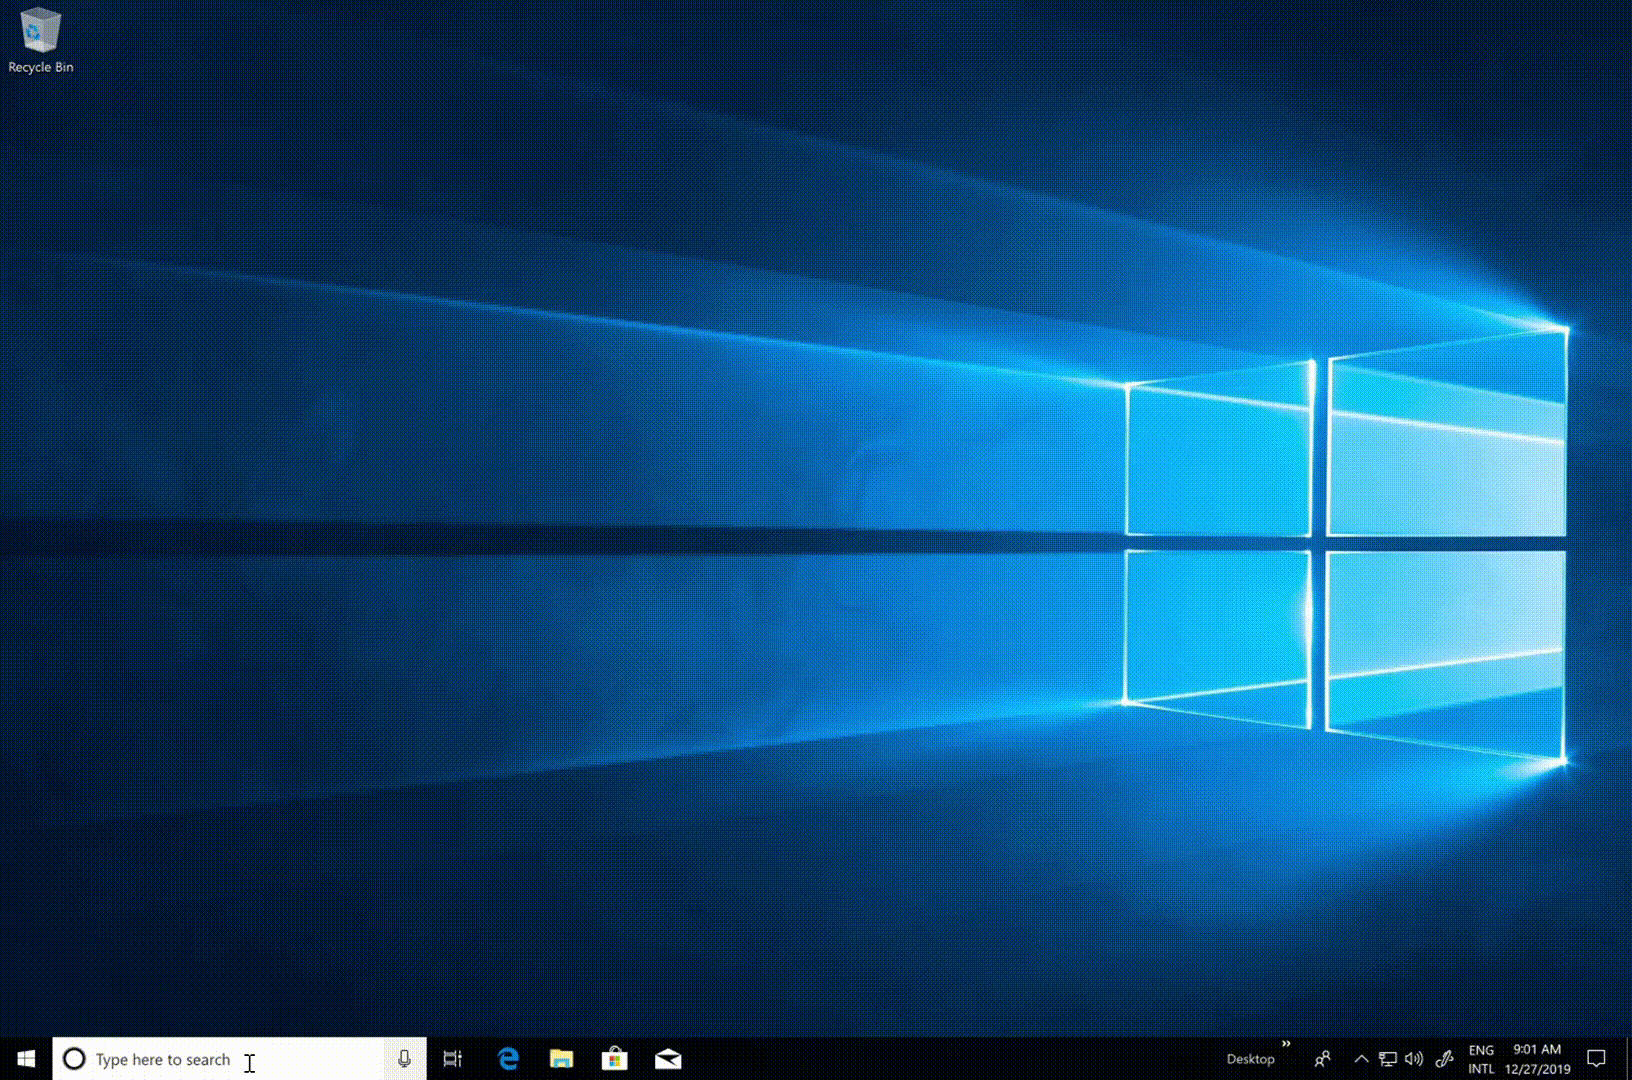 Windows 10'da arama davranışını gösteren animasyon.